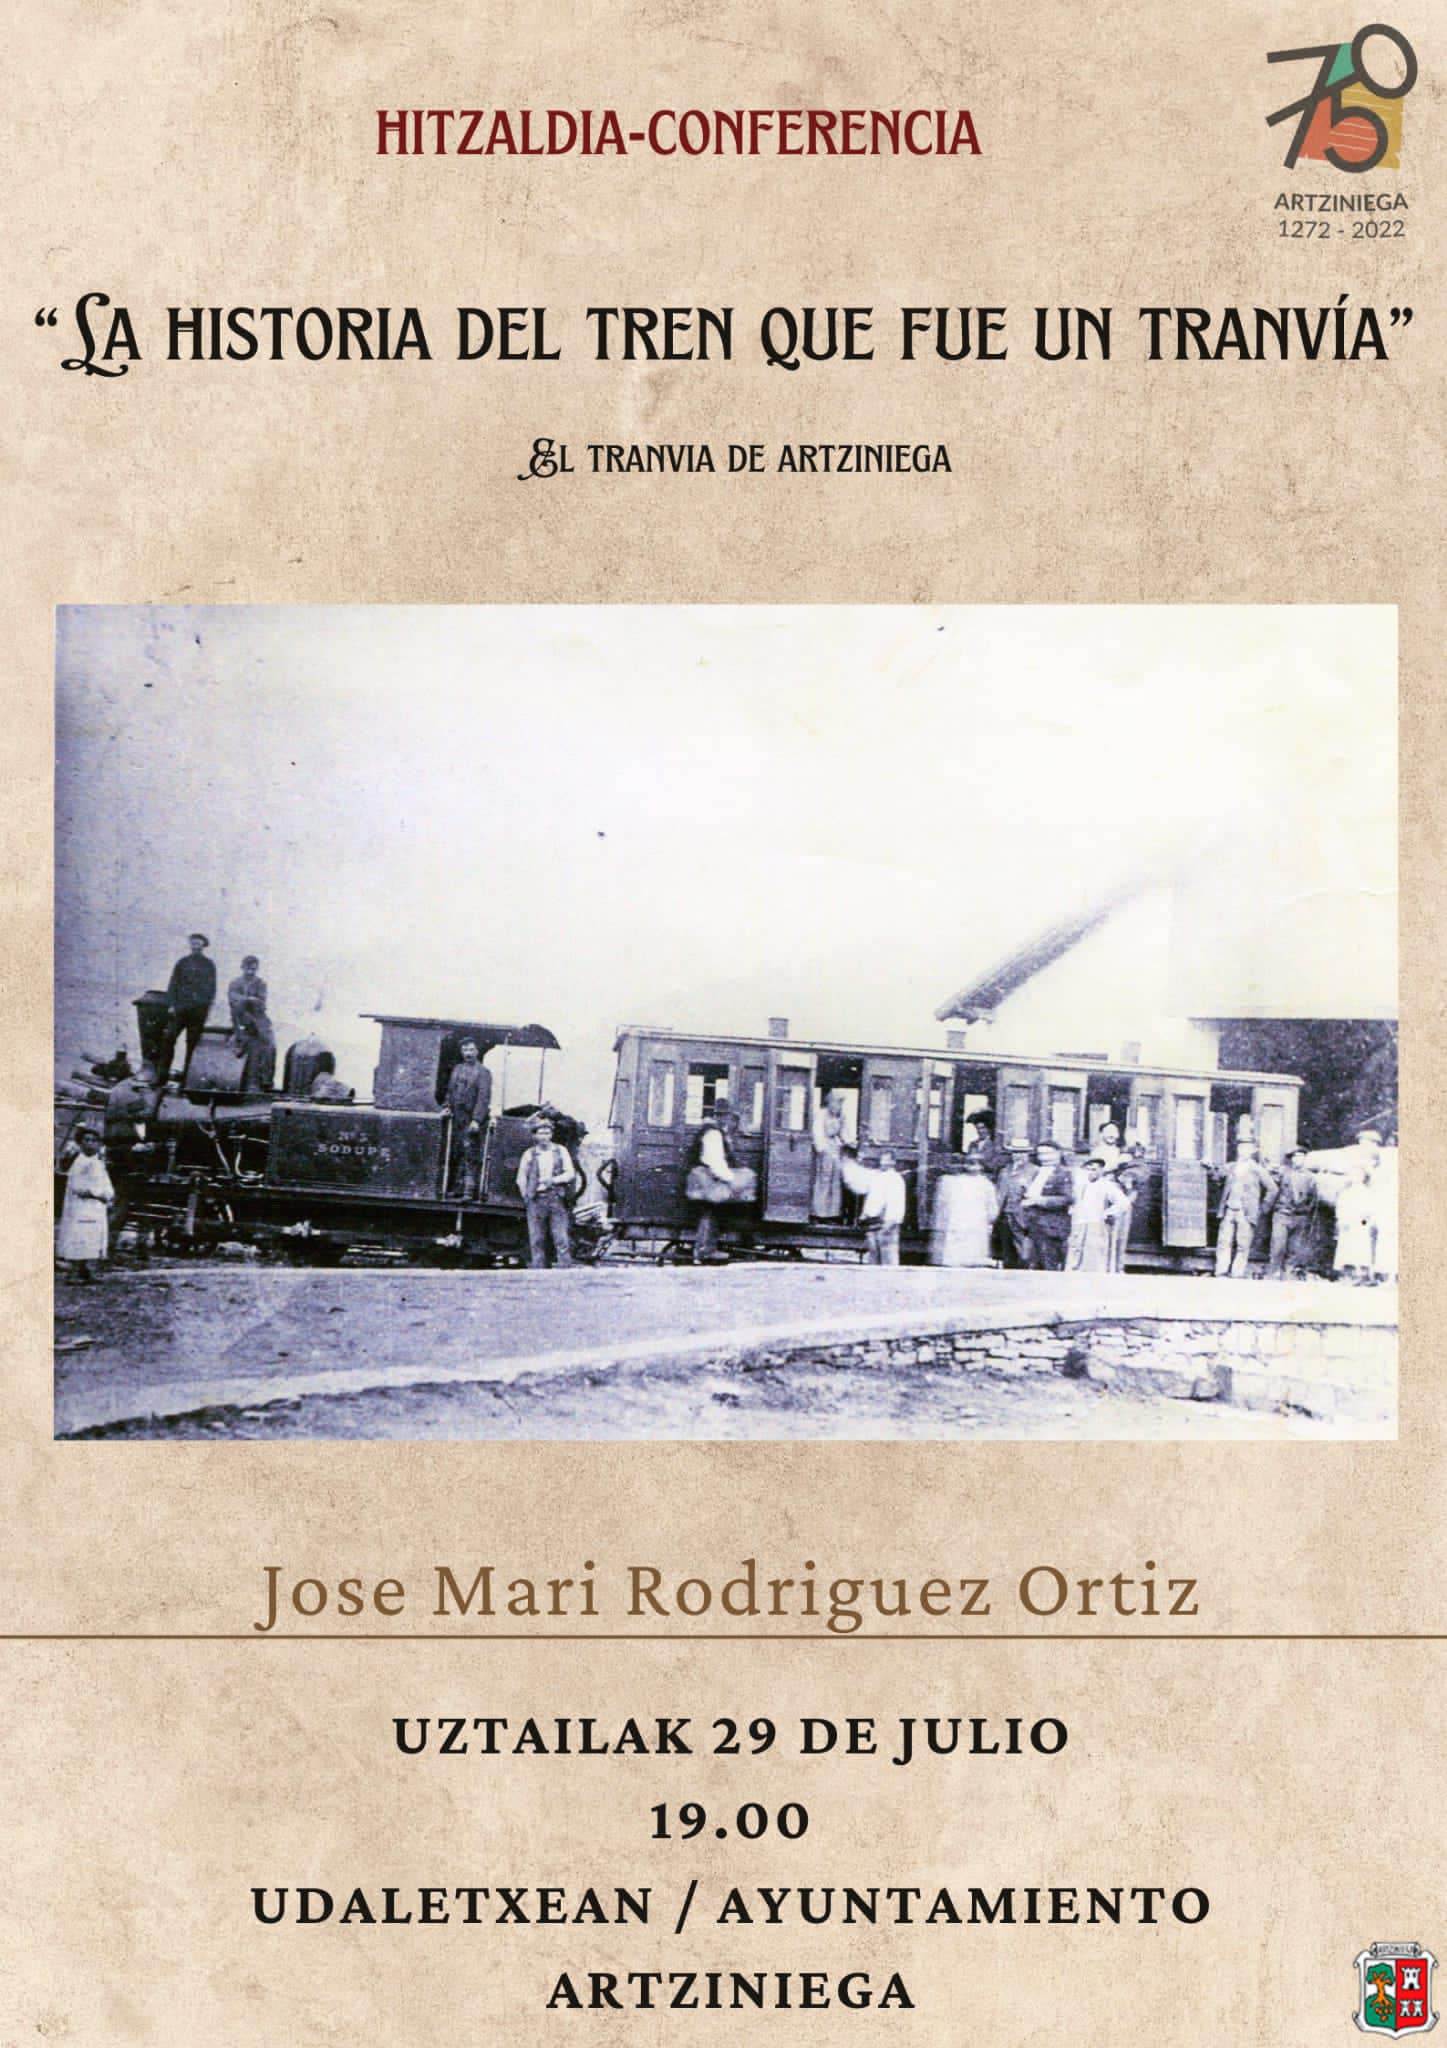  Este viernes, 29 de julio, tenemos conferencia de historia. Esta vez será sobre el tren que una vez tuvo Artziniega, a las 19:00 en el Ayuntamiento, de la mano de Jose Mari Rodriguez Ortiz.